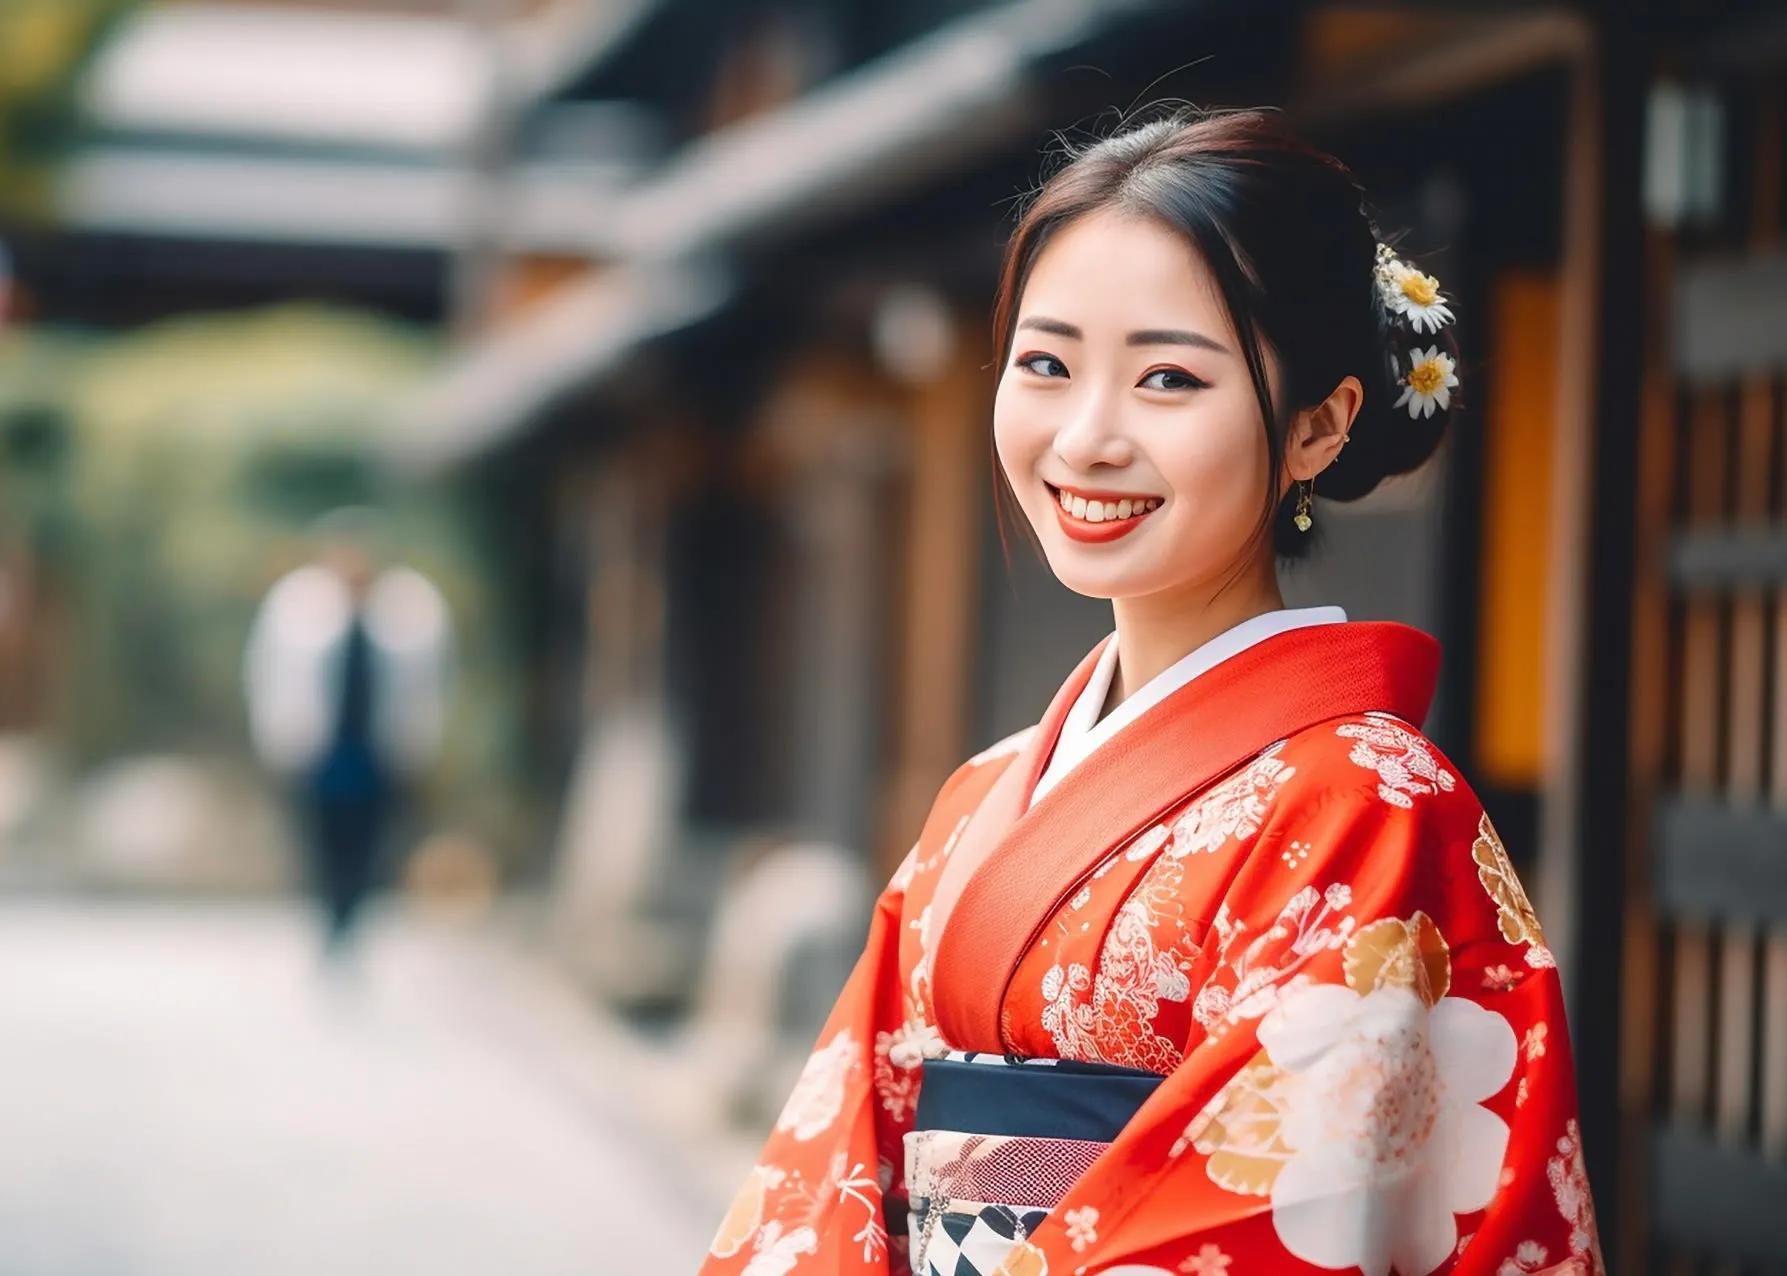 Kimono ngày nay đã trở thành trang phục truyền thống lâu đời của Nhật